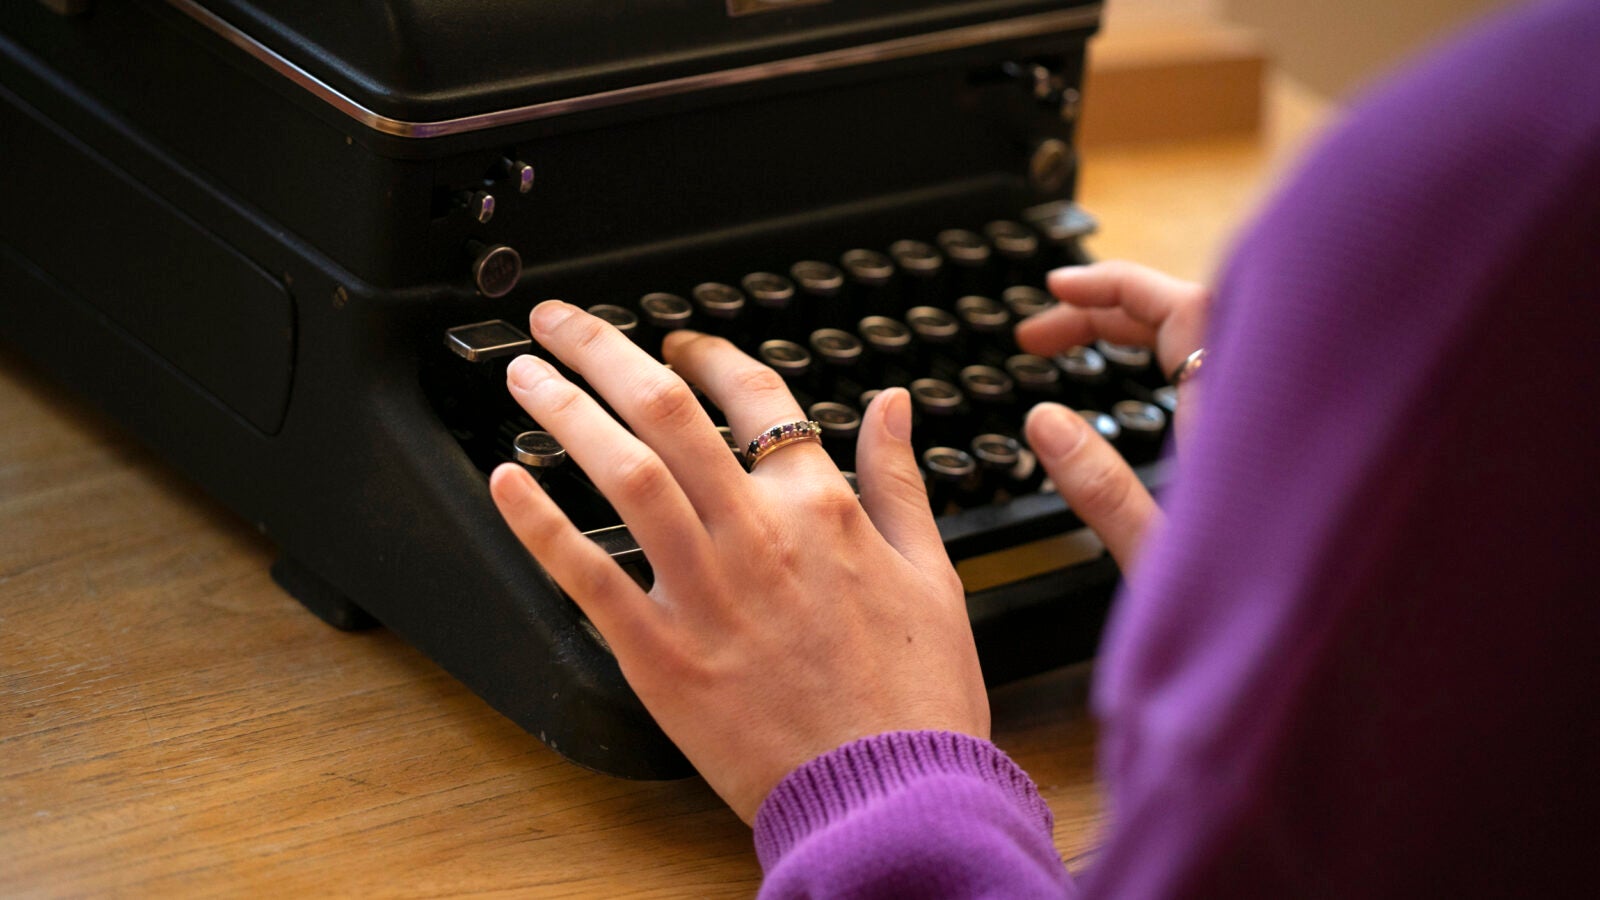 Hands on a typewriter.